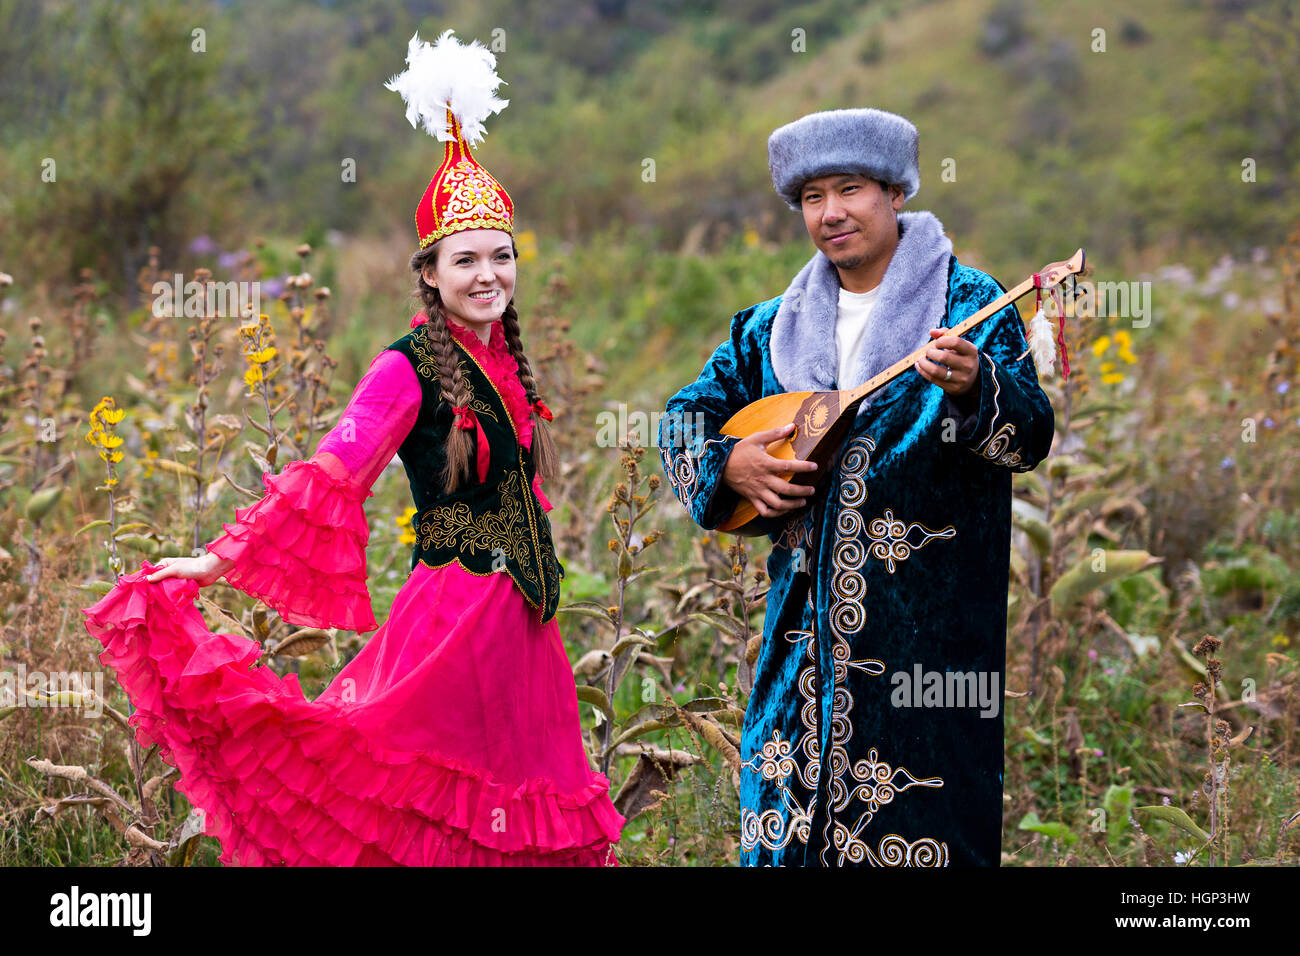 Kazakh homme jouant l'instrument de musique national de dombra et de femme dans des danses rouges à Almaty, Kazakhstan Banque D'Images